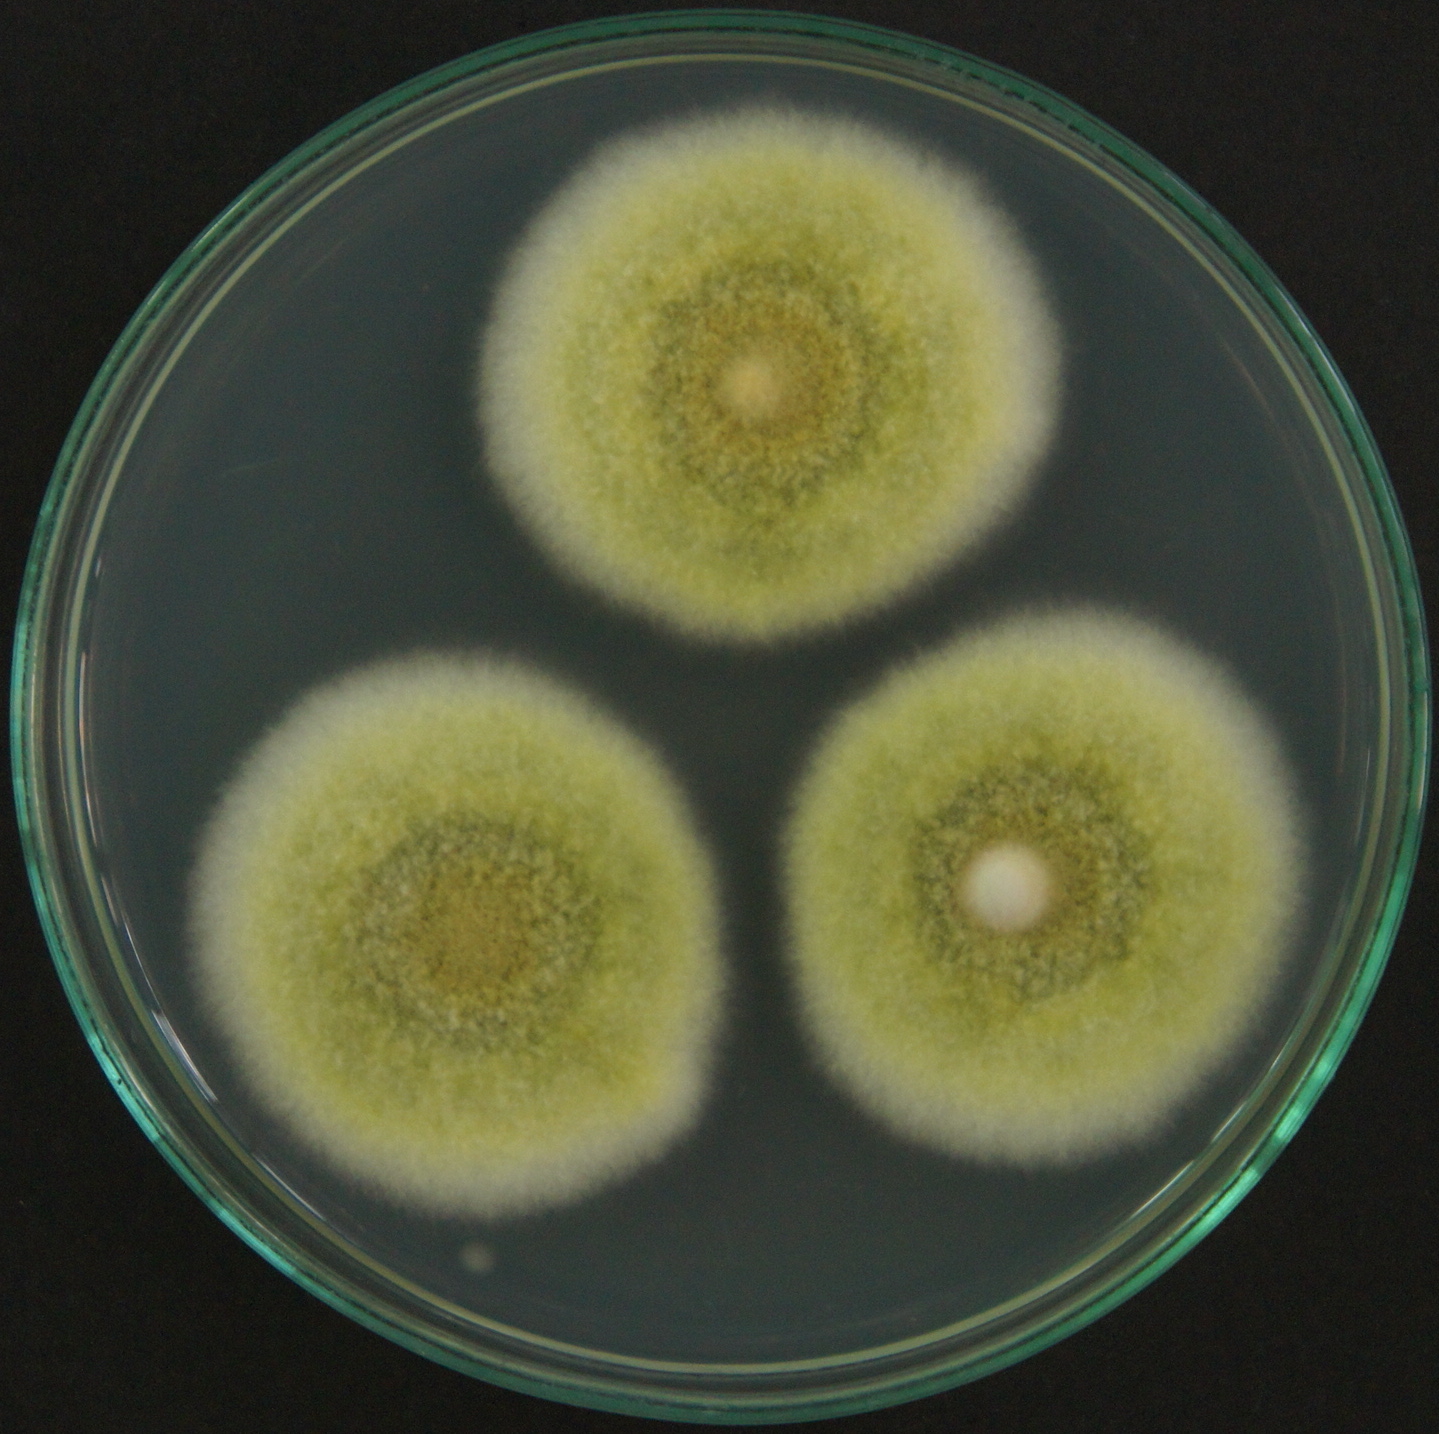 Talaromyces sp. HC1 growing on potato dextrose agar. Image by Diego Jimenez.